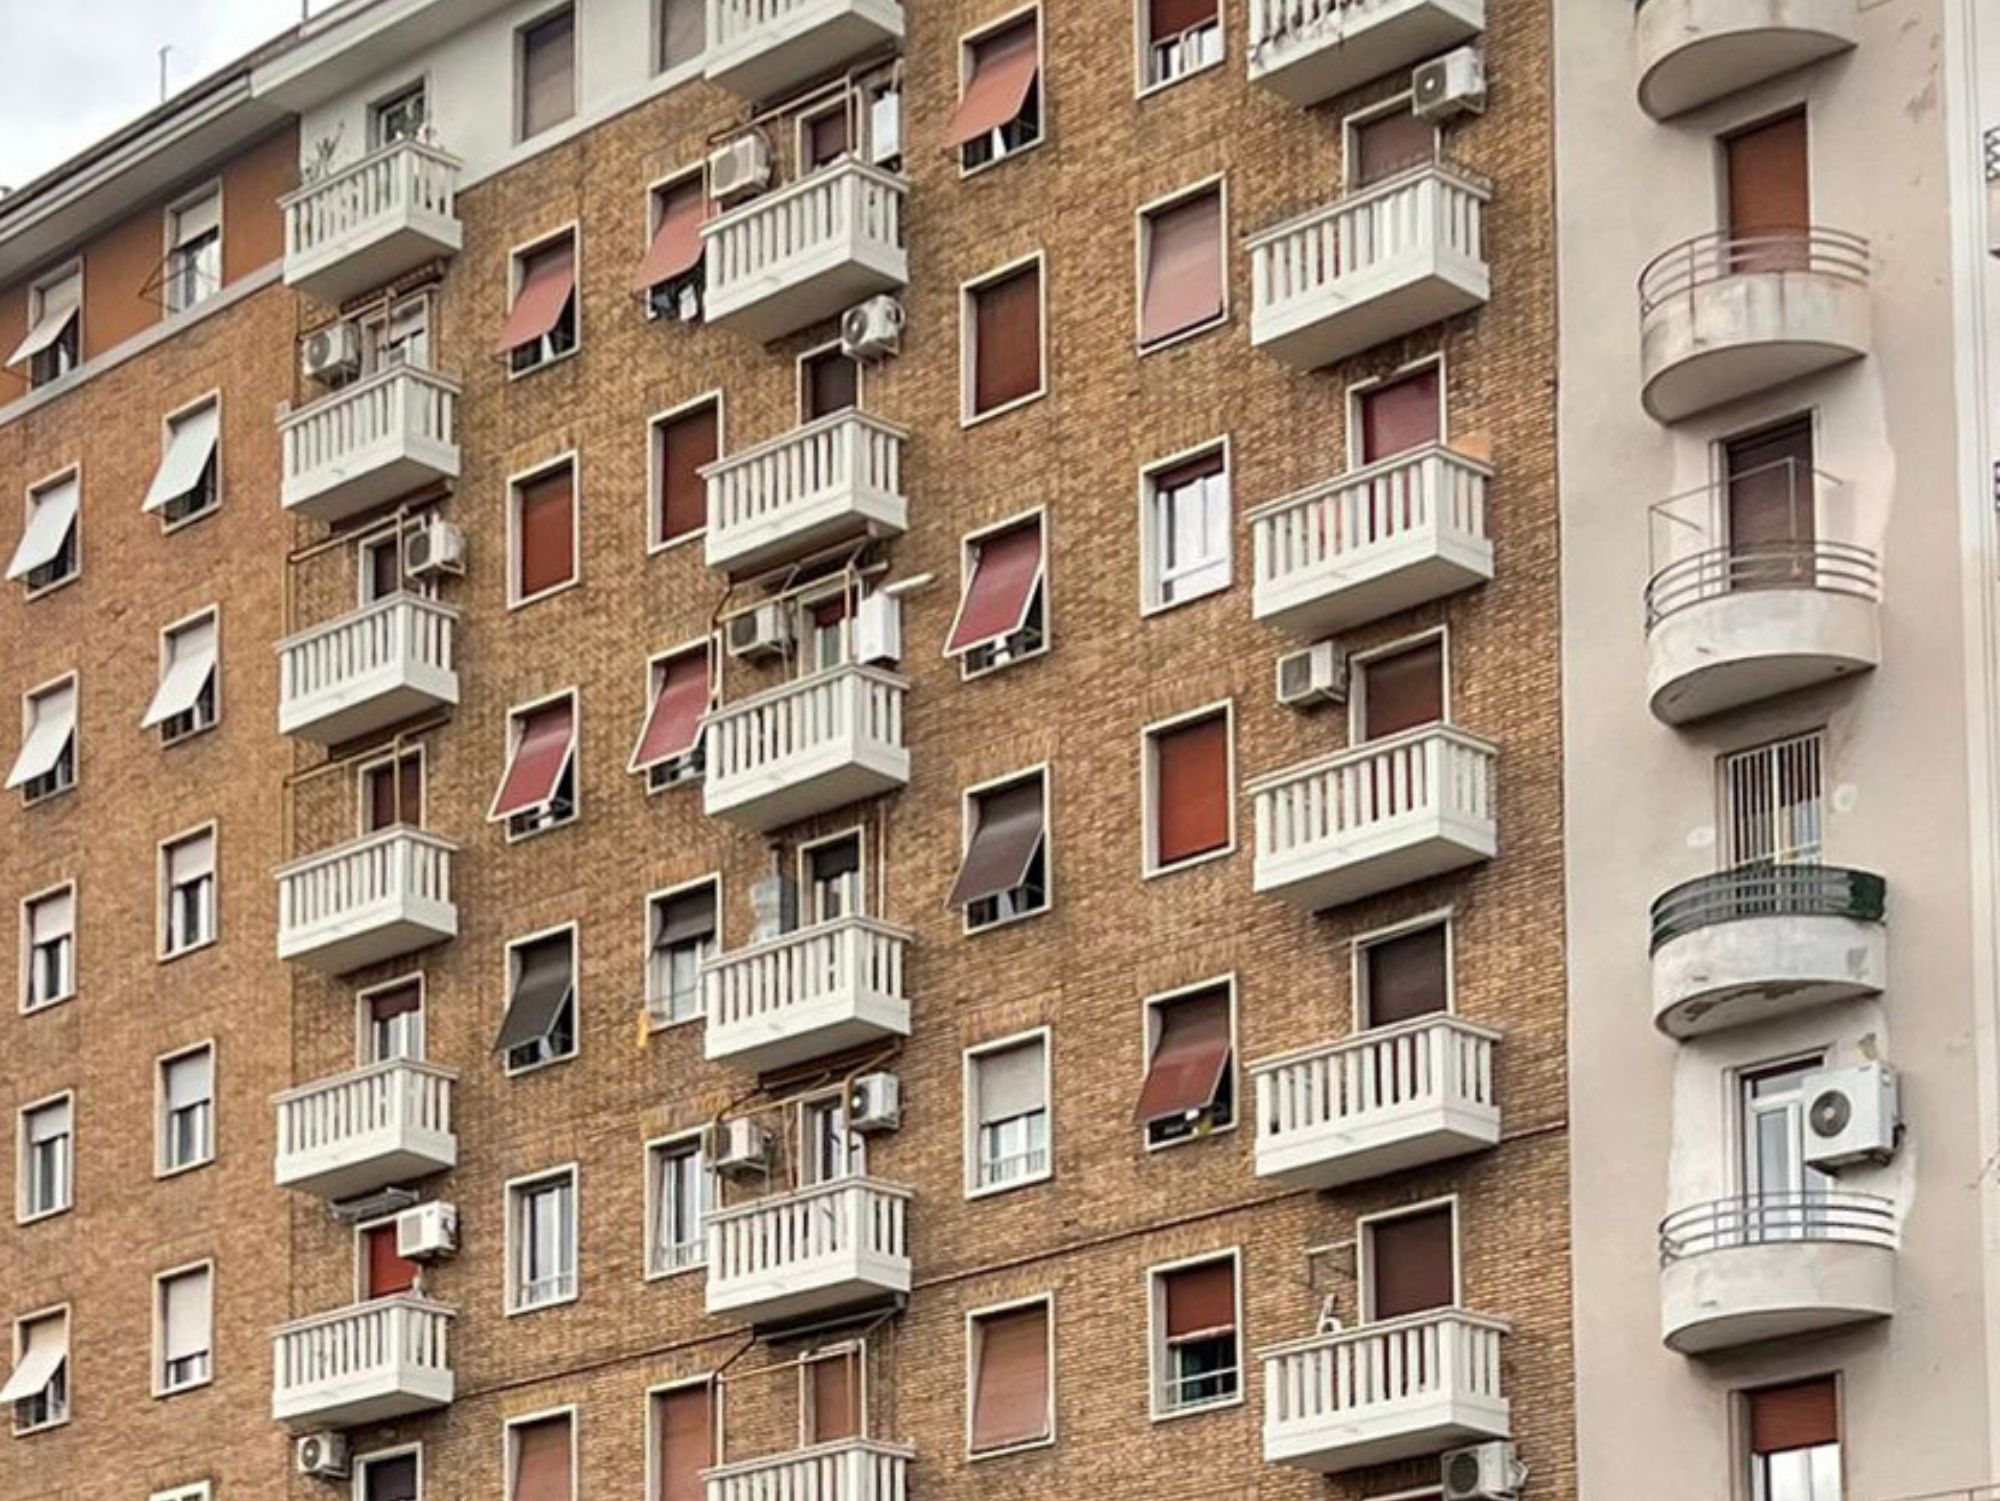 Condominio Via Ivrea, Roma - Intervento di ristrutturazione della facciata (1)